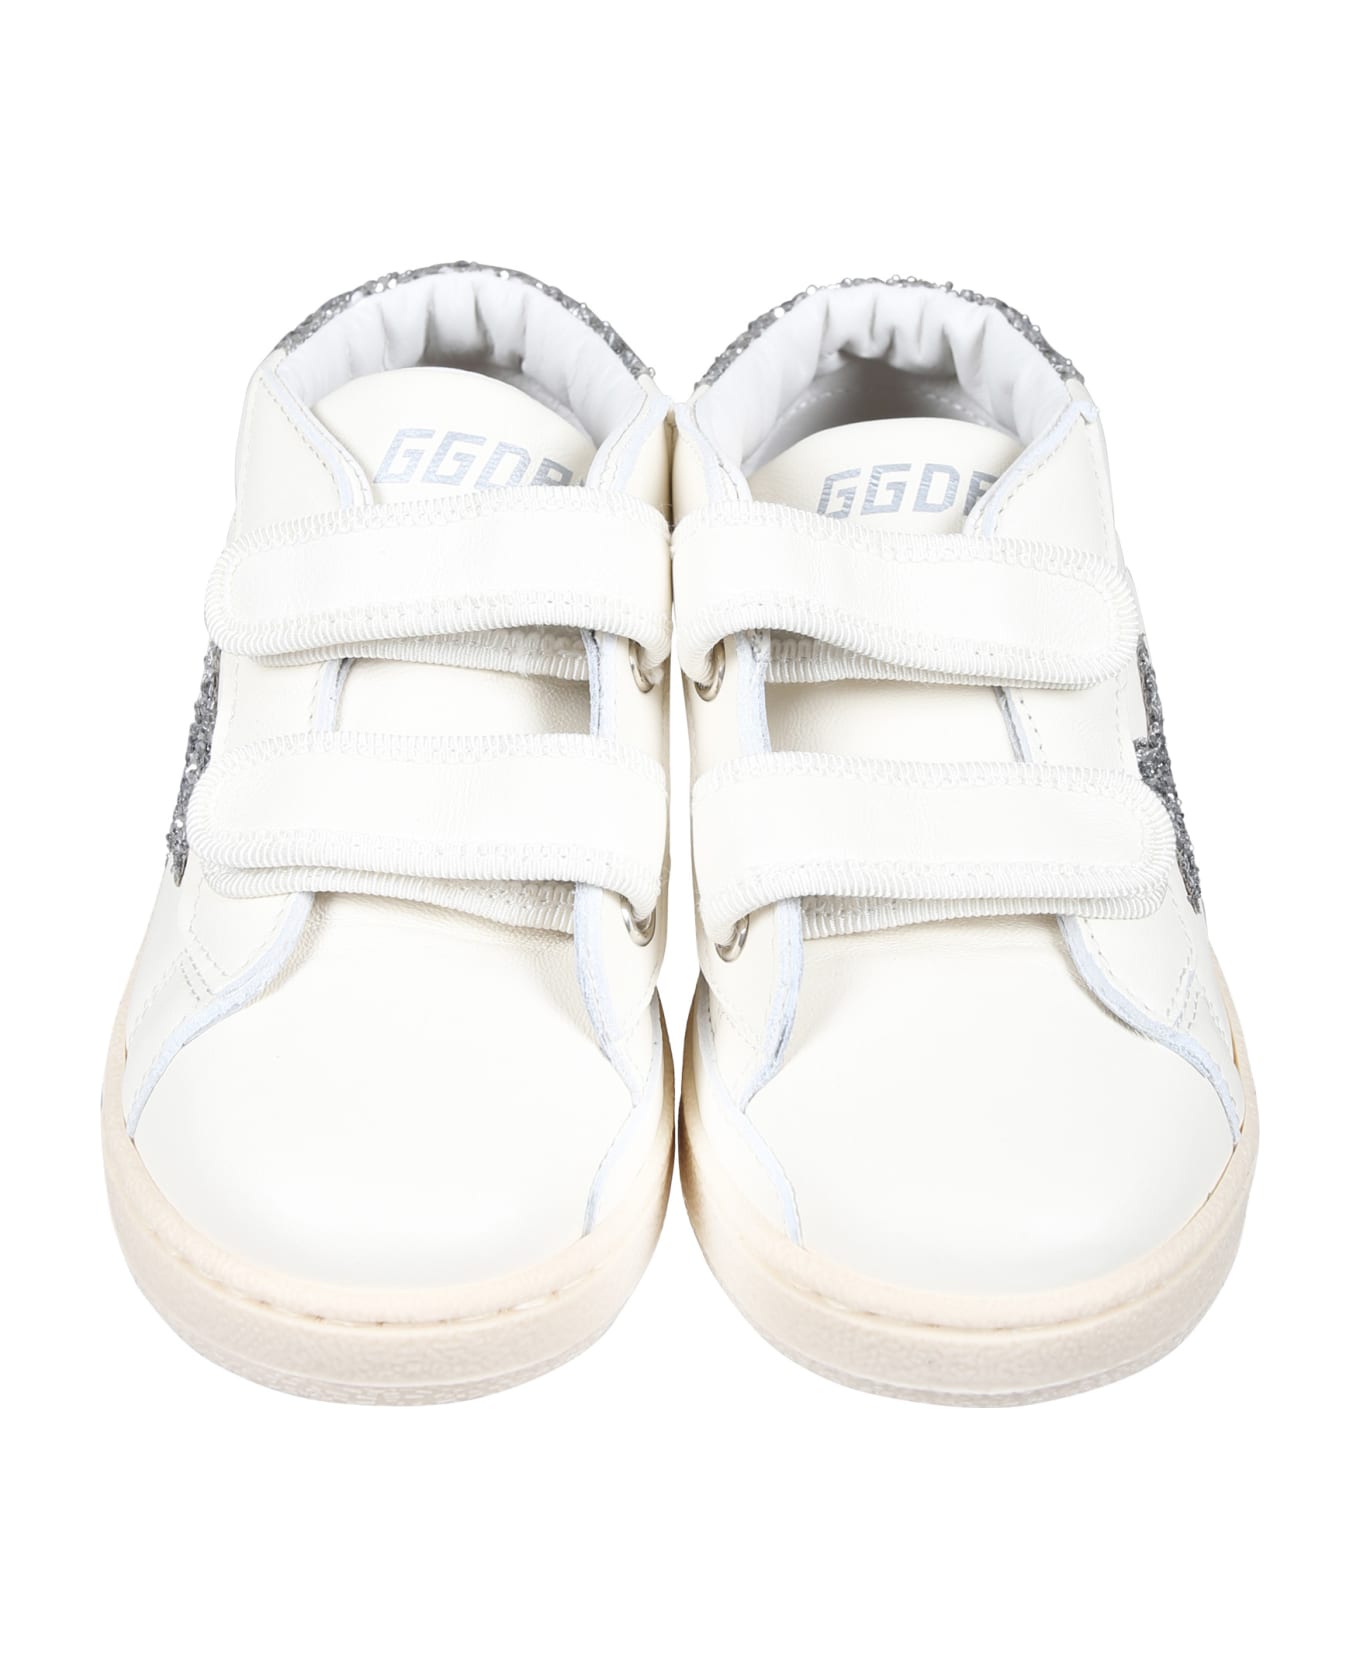 Golden Goose White June Ballstar High Sneakers For Girl With Logo - Optic White/Silver